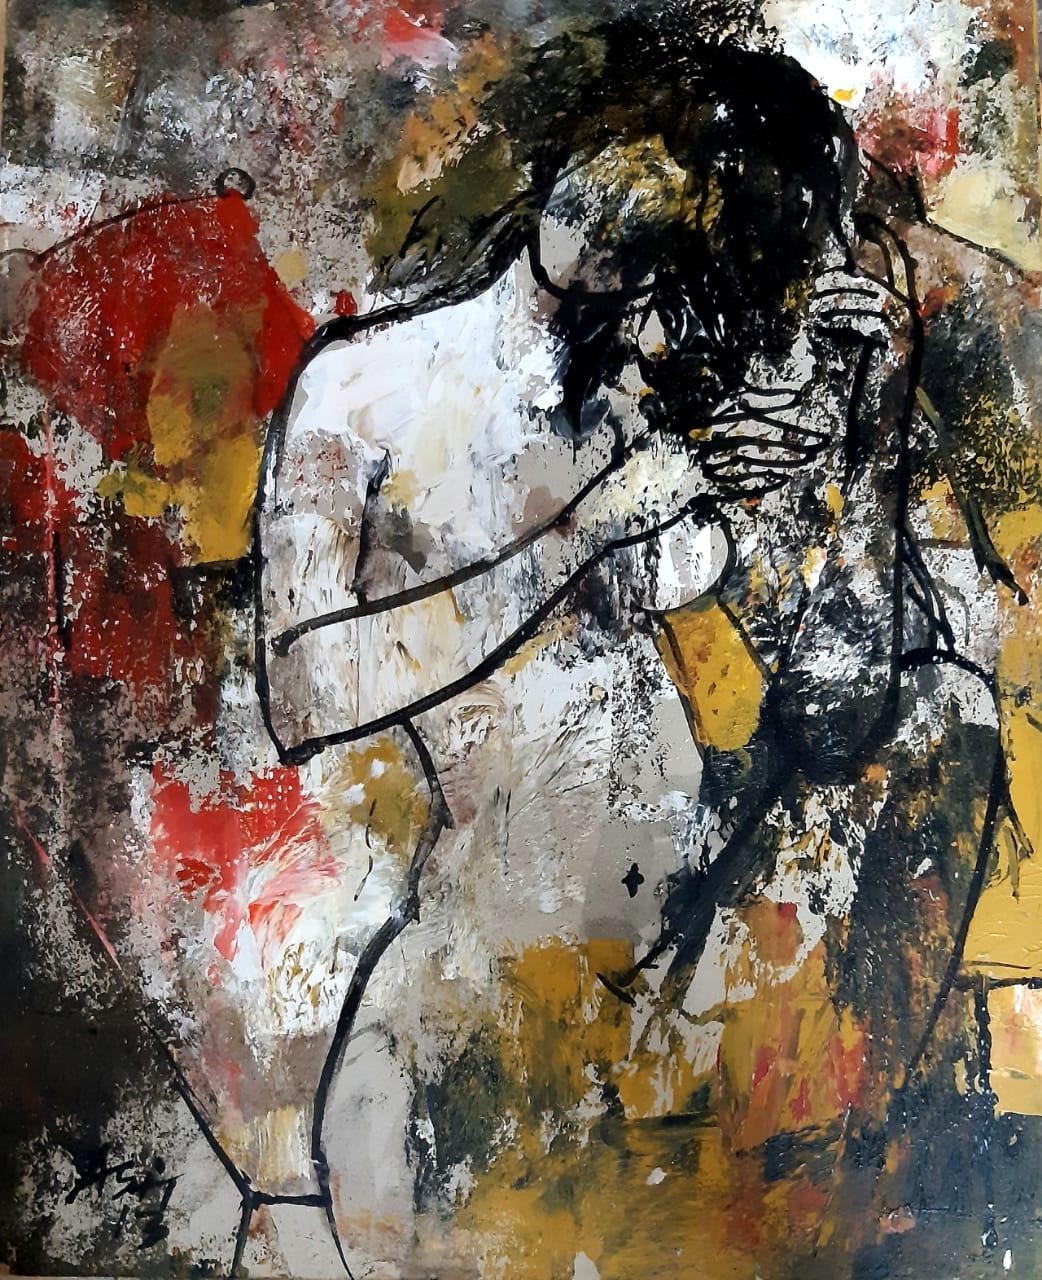 Nude Painting Ashit Sarkar - Femme nue, acrylique sur toile, rouge, jaune, noire de l'artiste indienne « en stock »